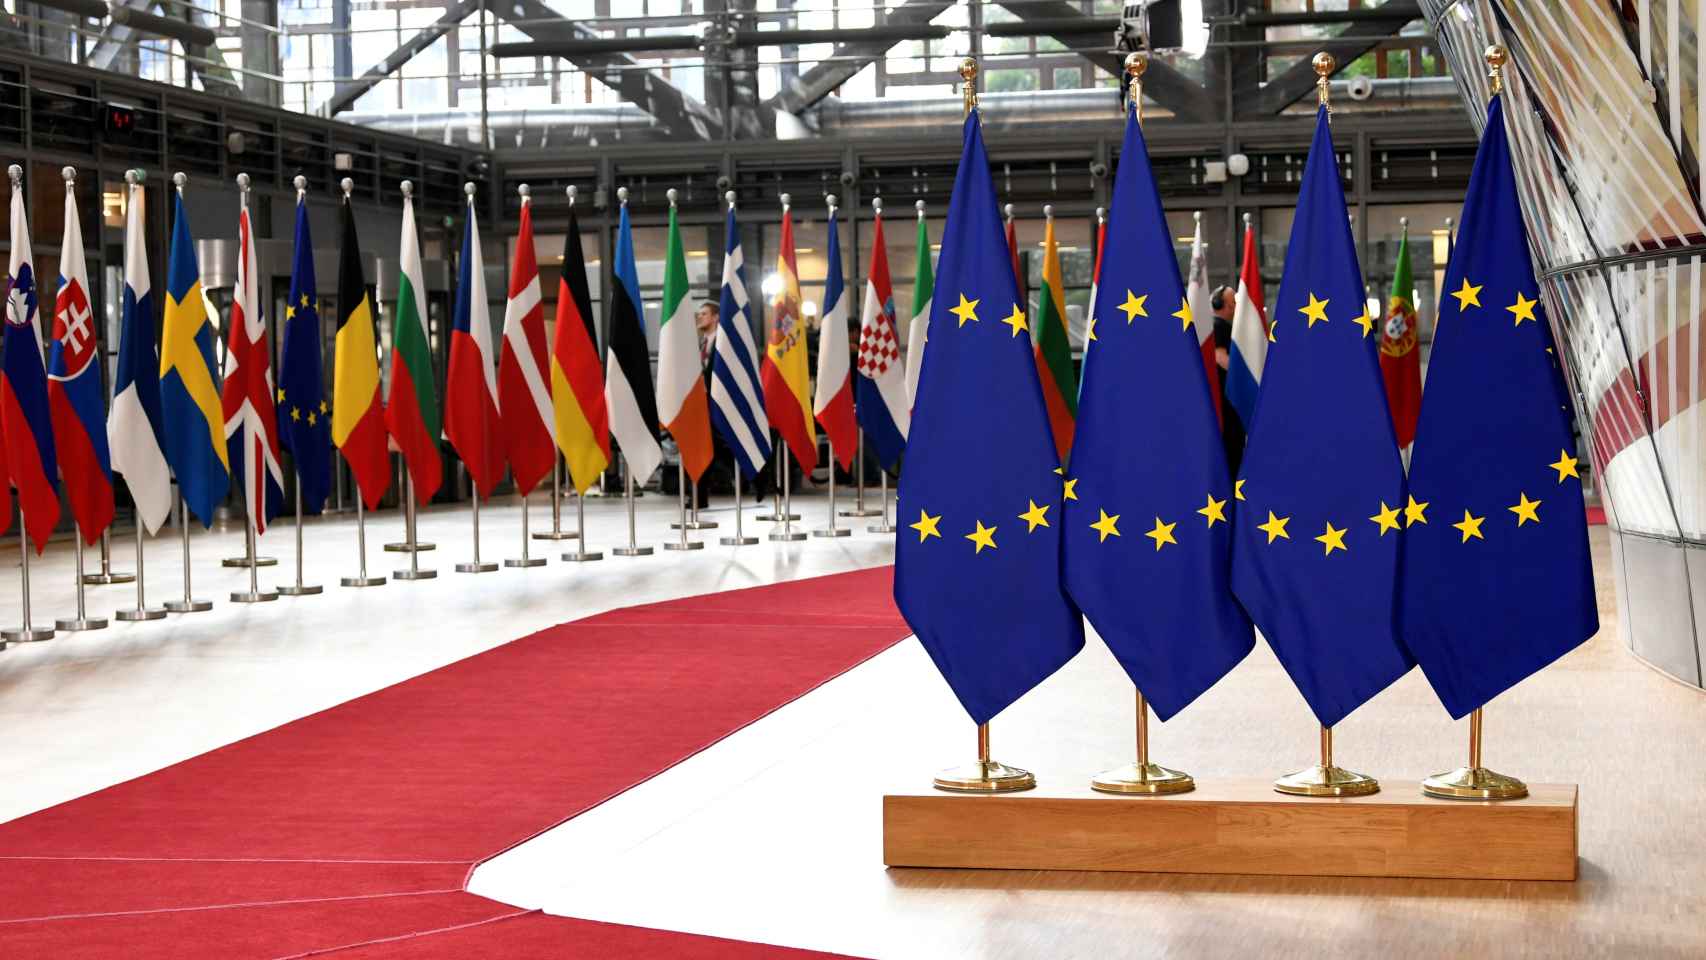 Banderas de la UE y de los países miembros